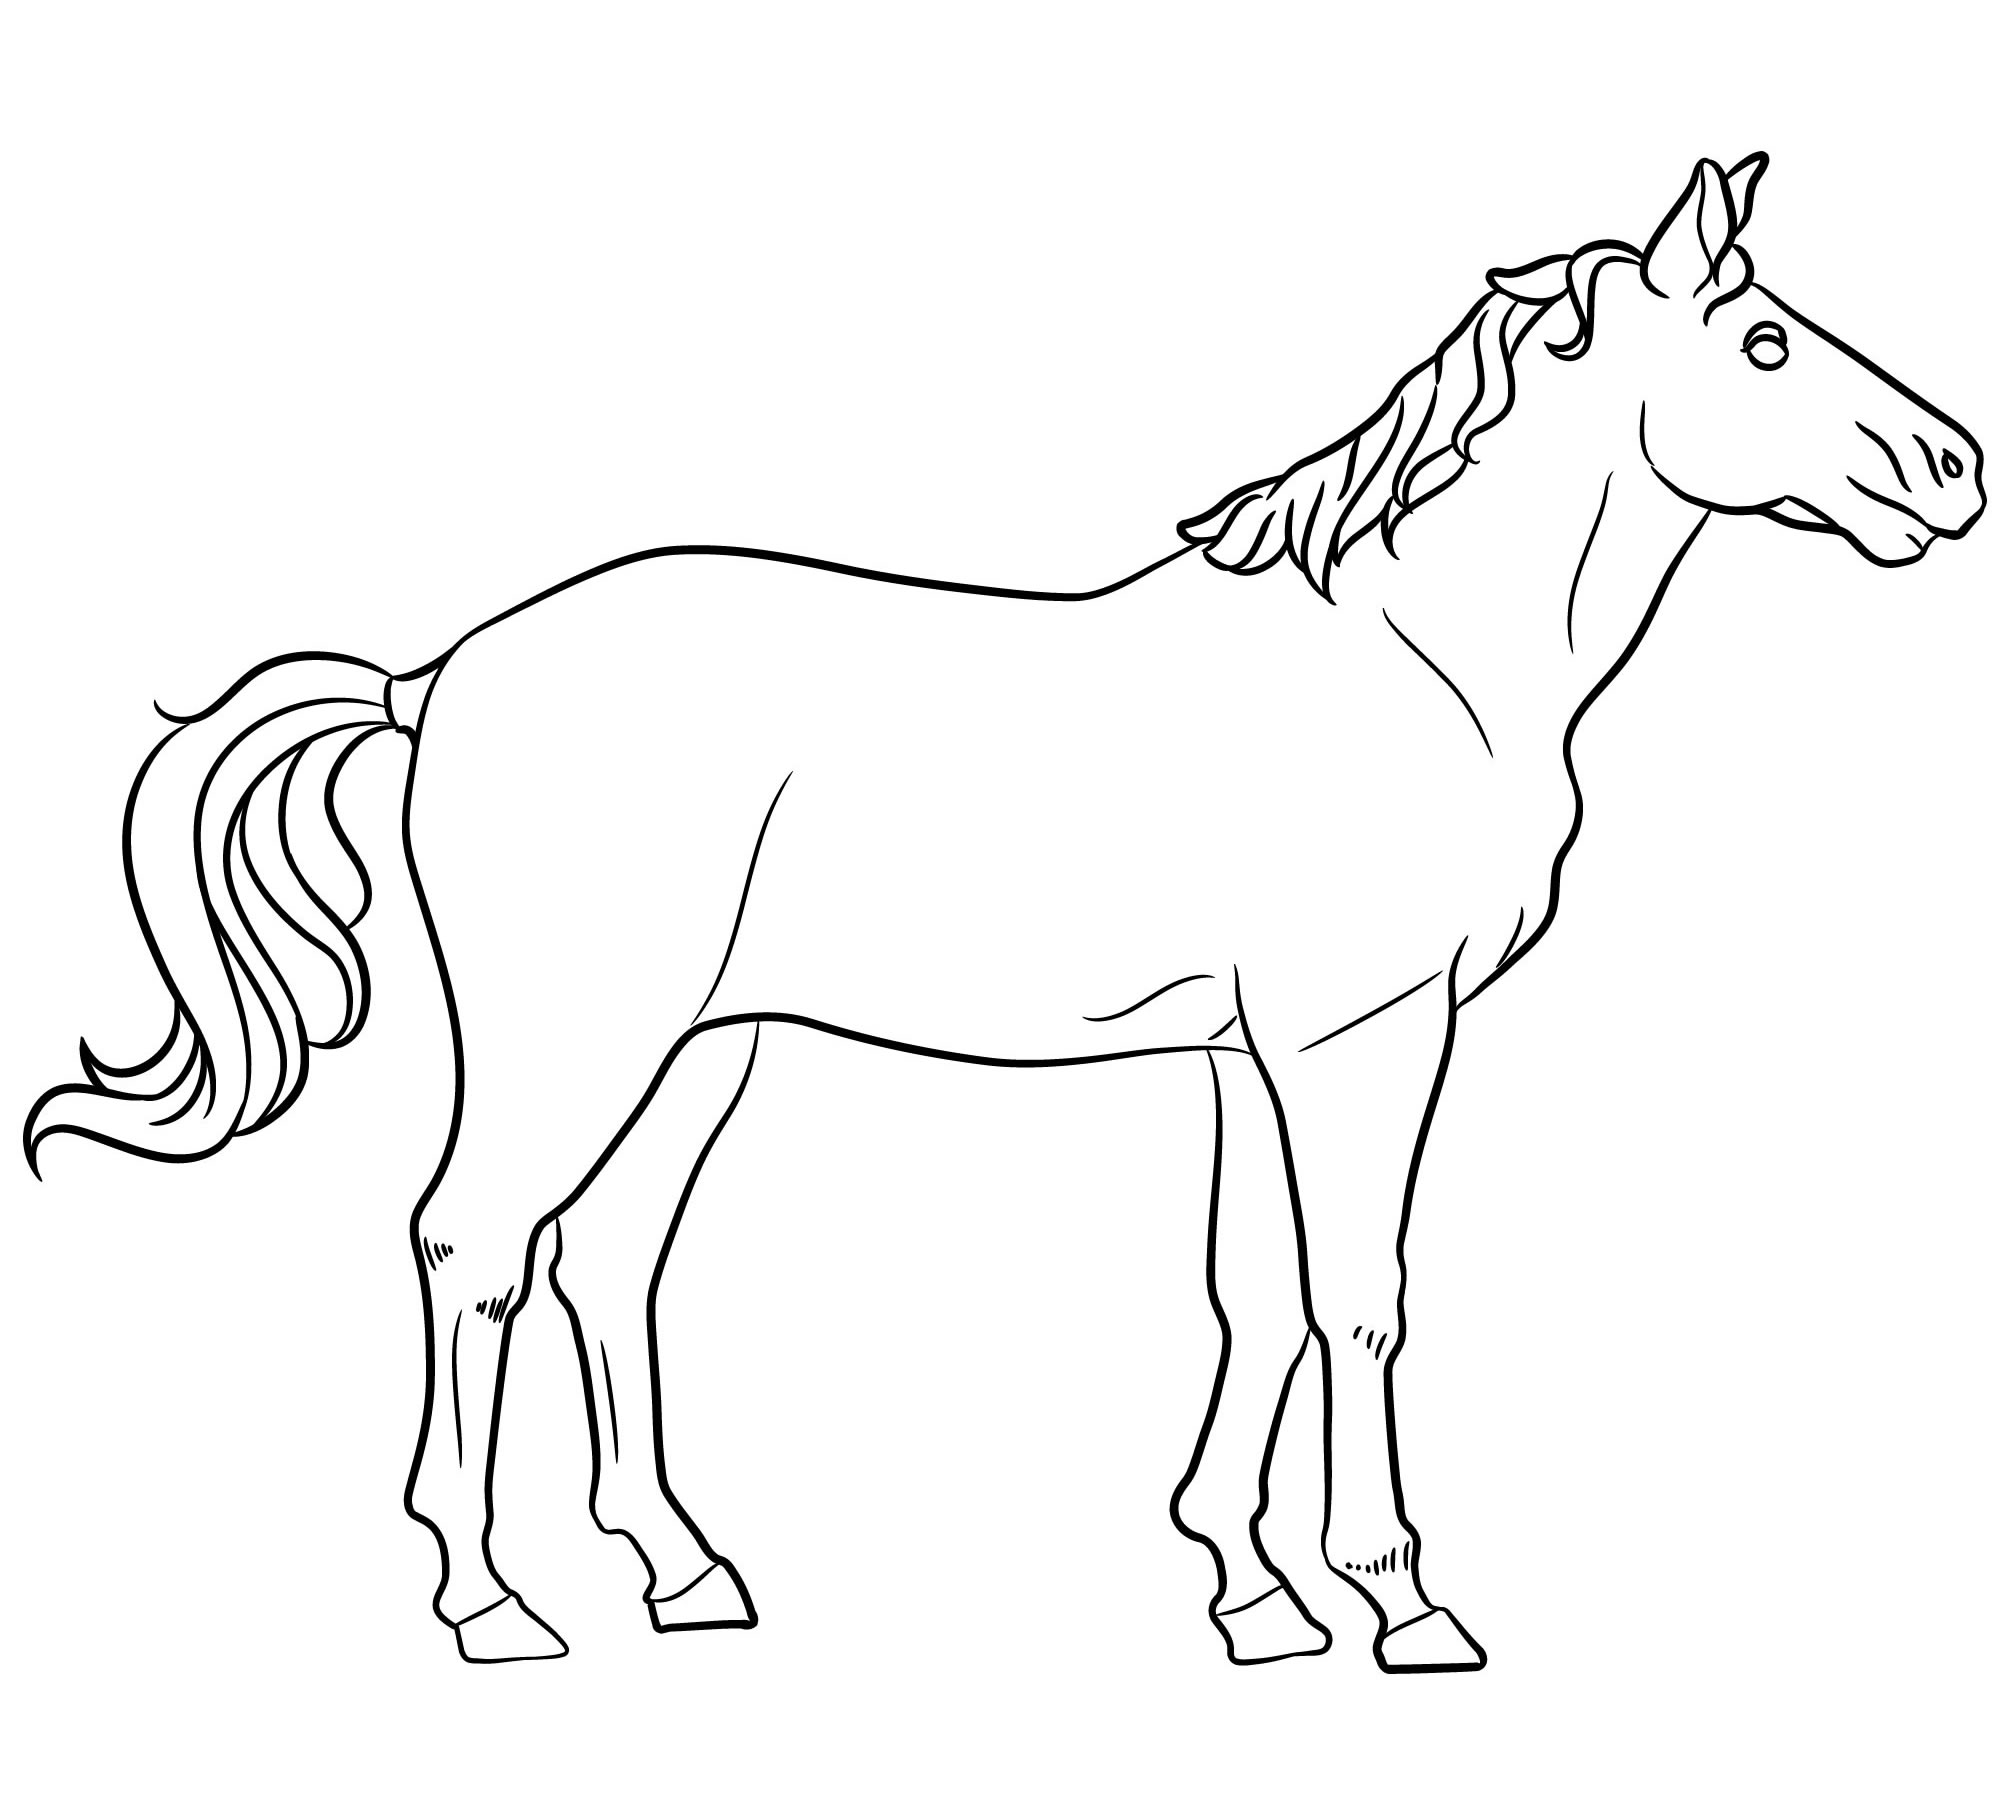 Раскраска лошадь для детей. Раскраски про лошадей